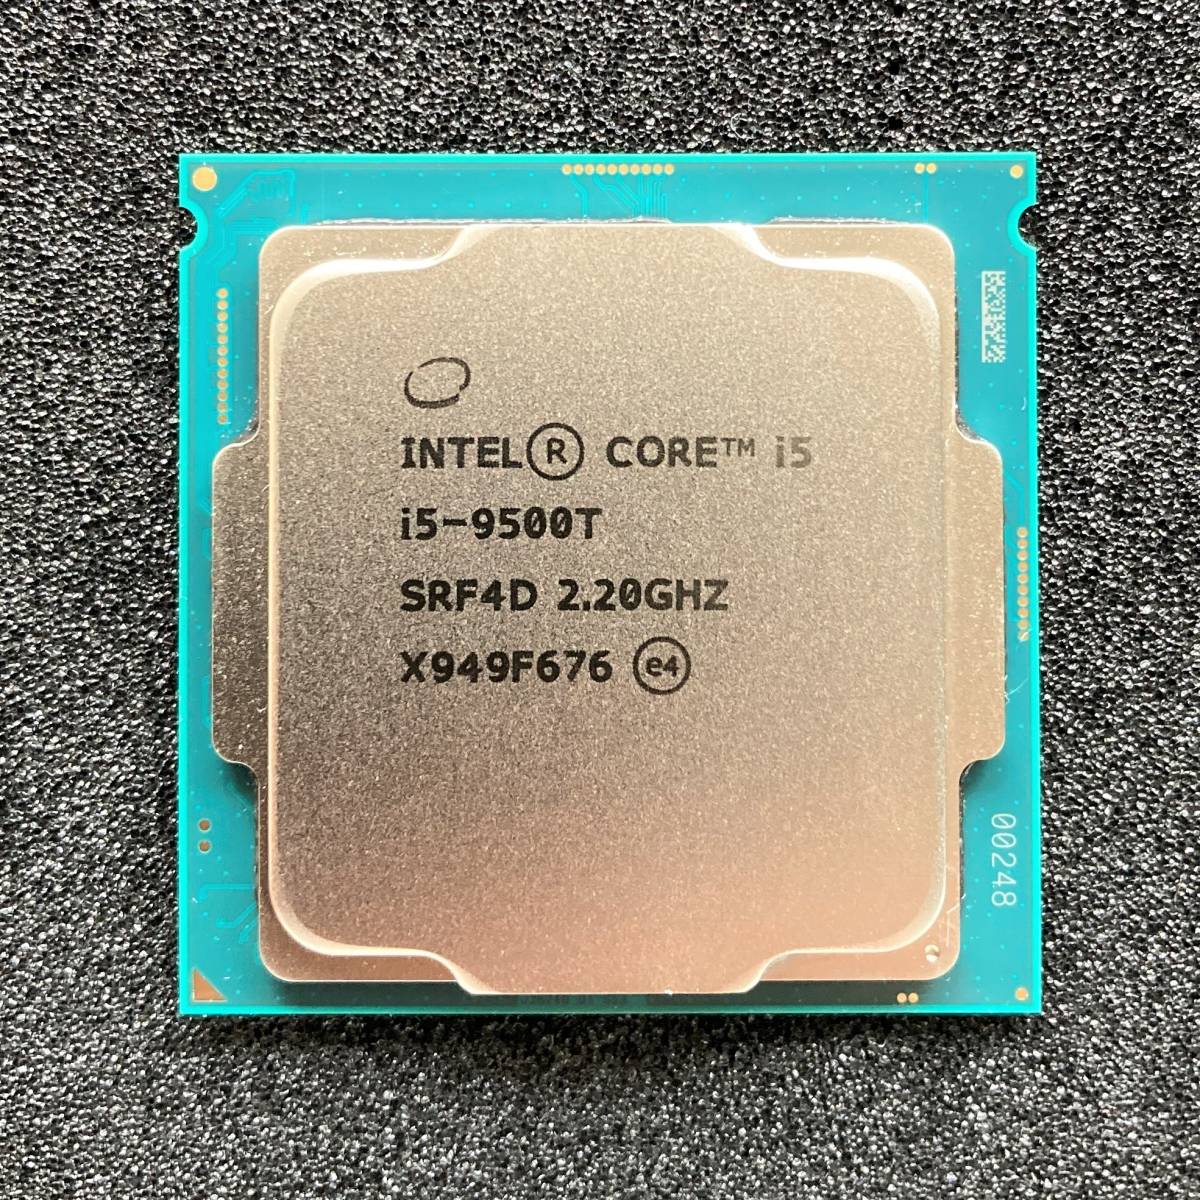 Intel Core i5-9500T CPU